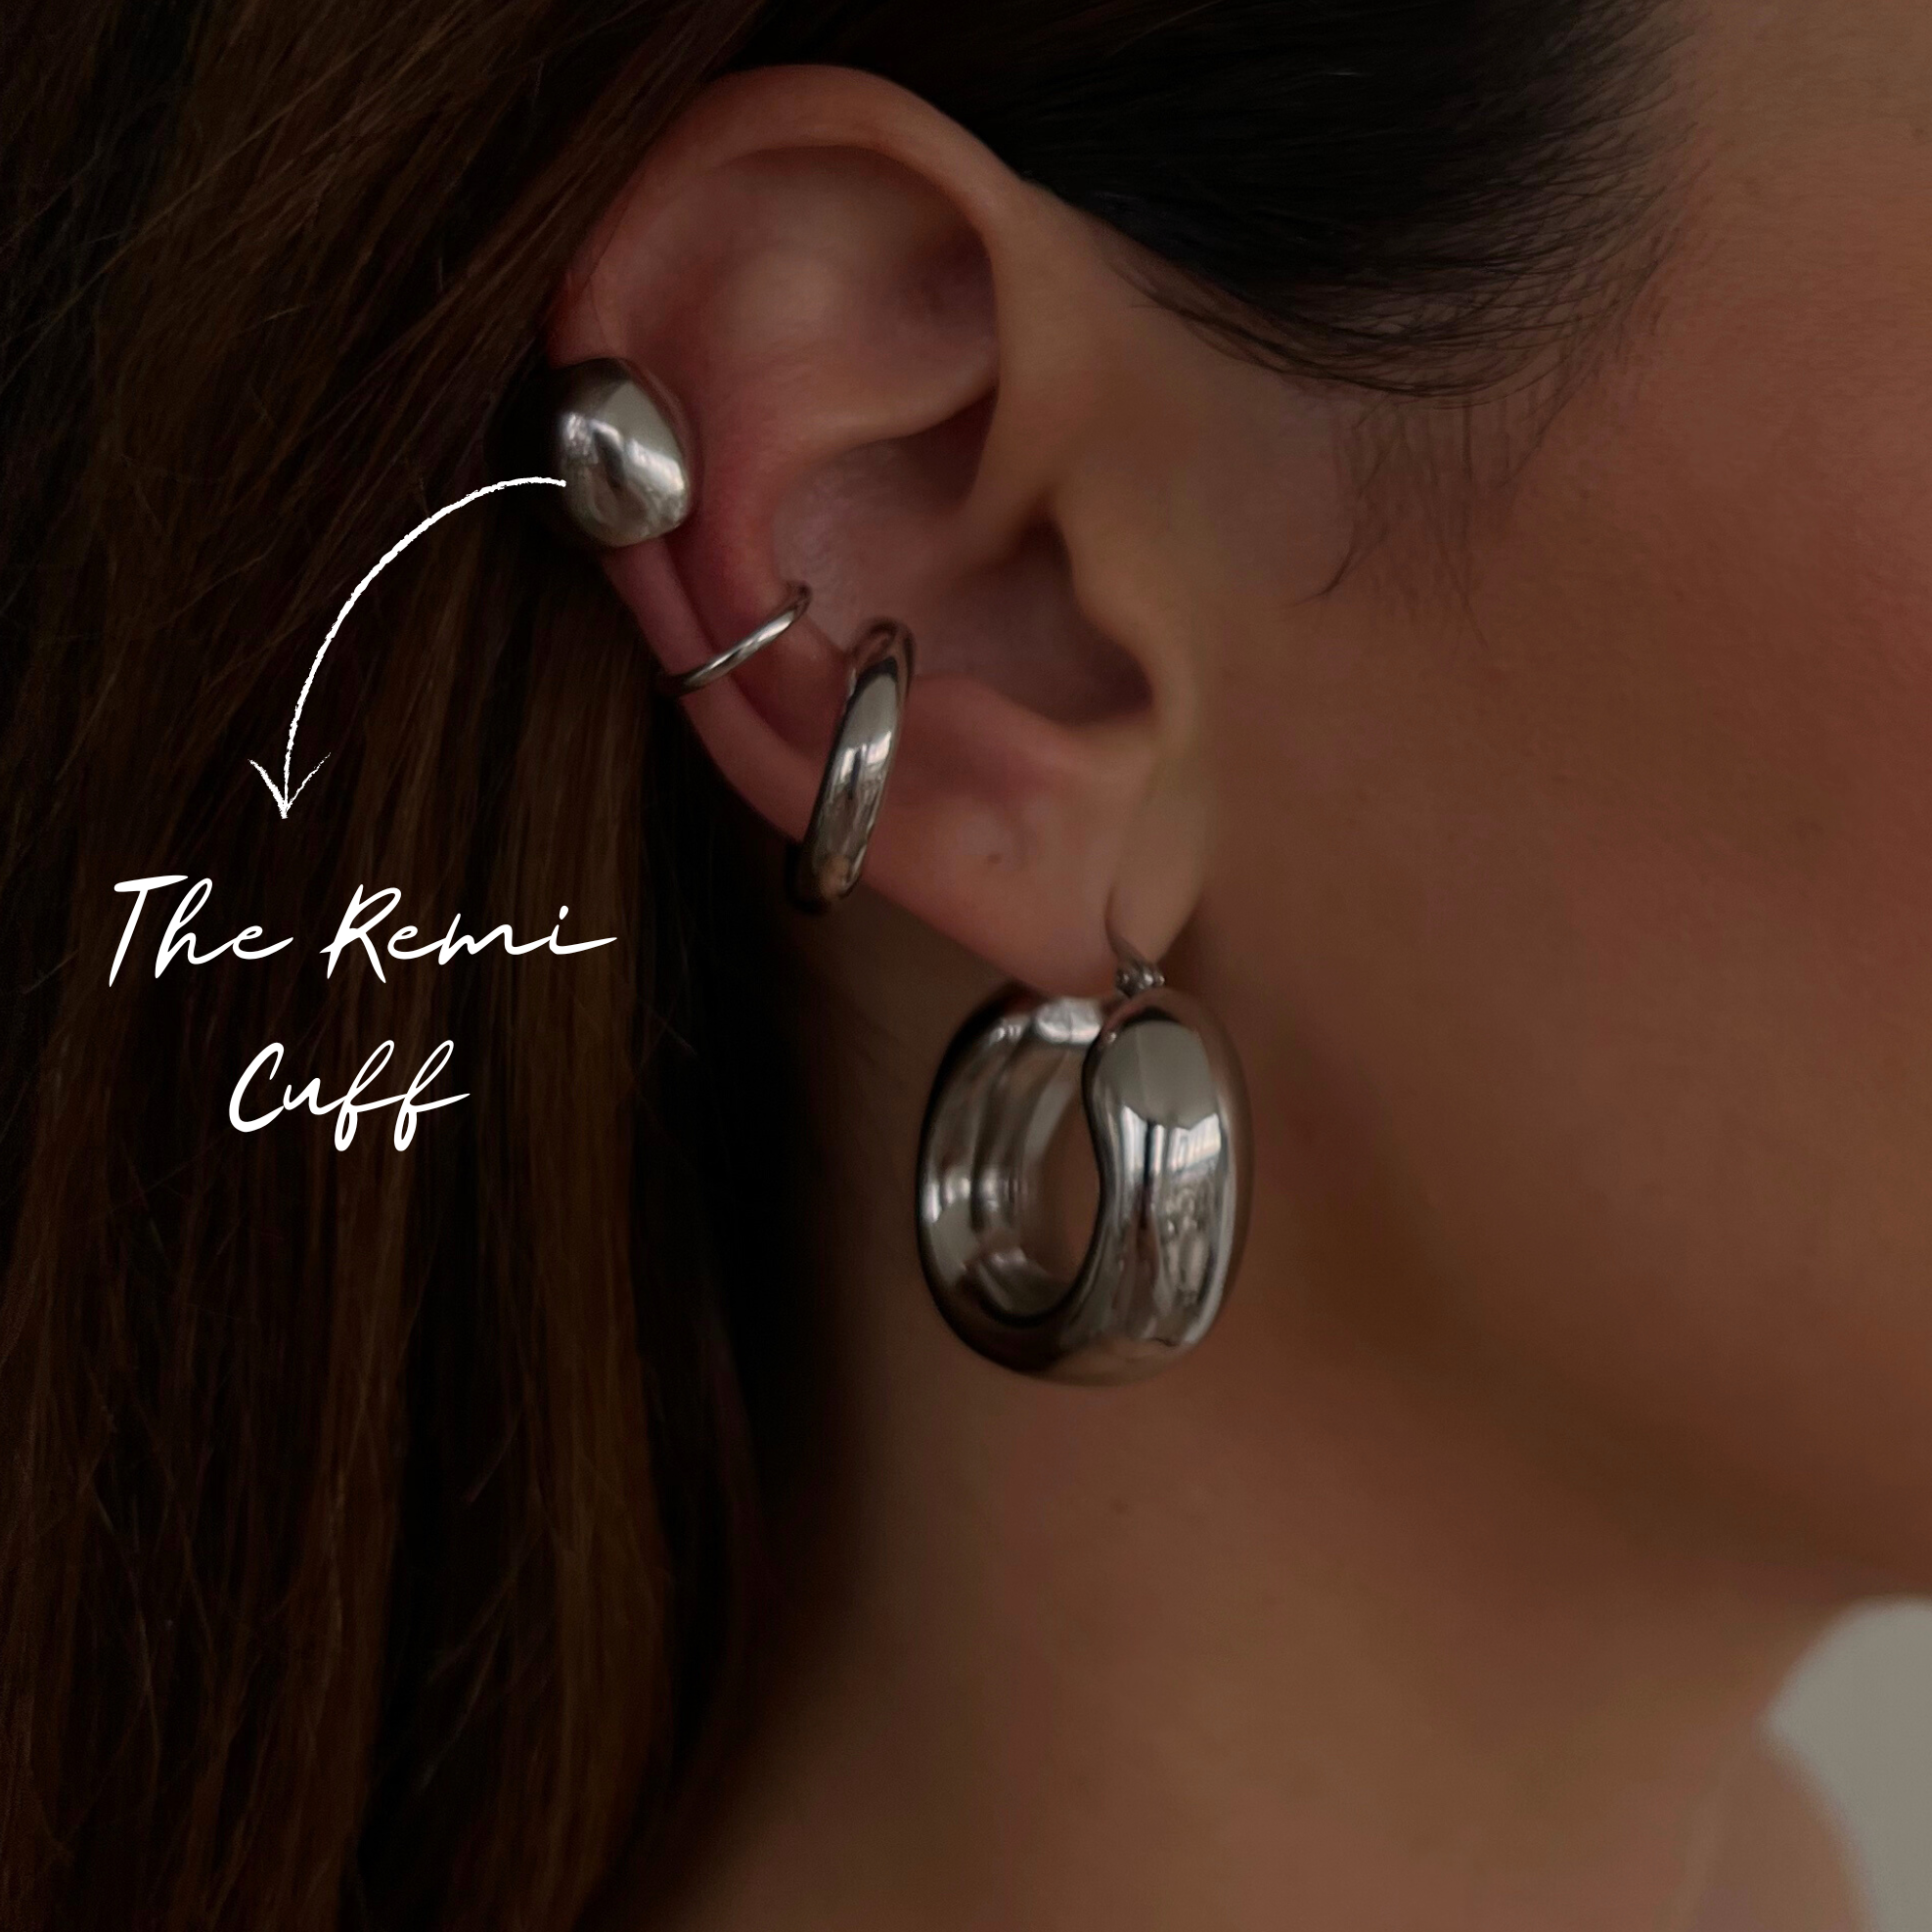 The Remi Huggie Ear Cuff